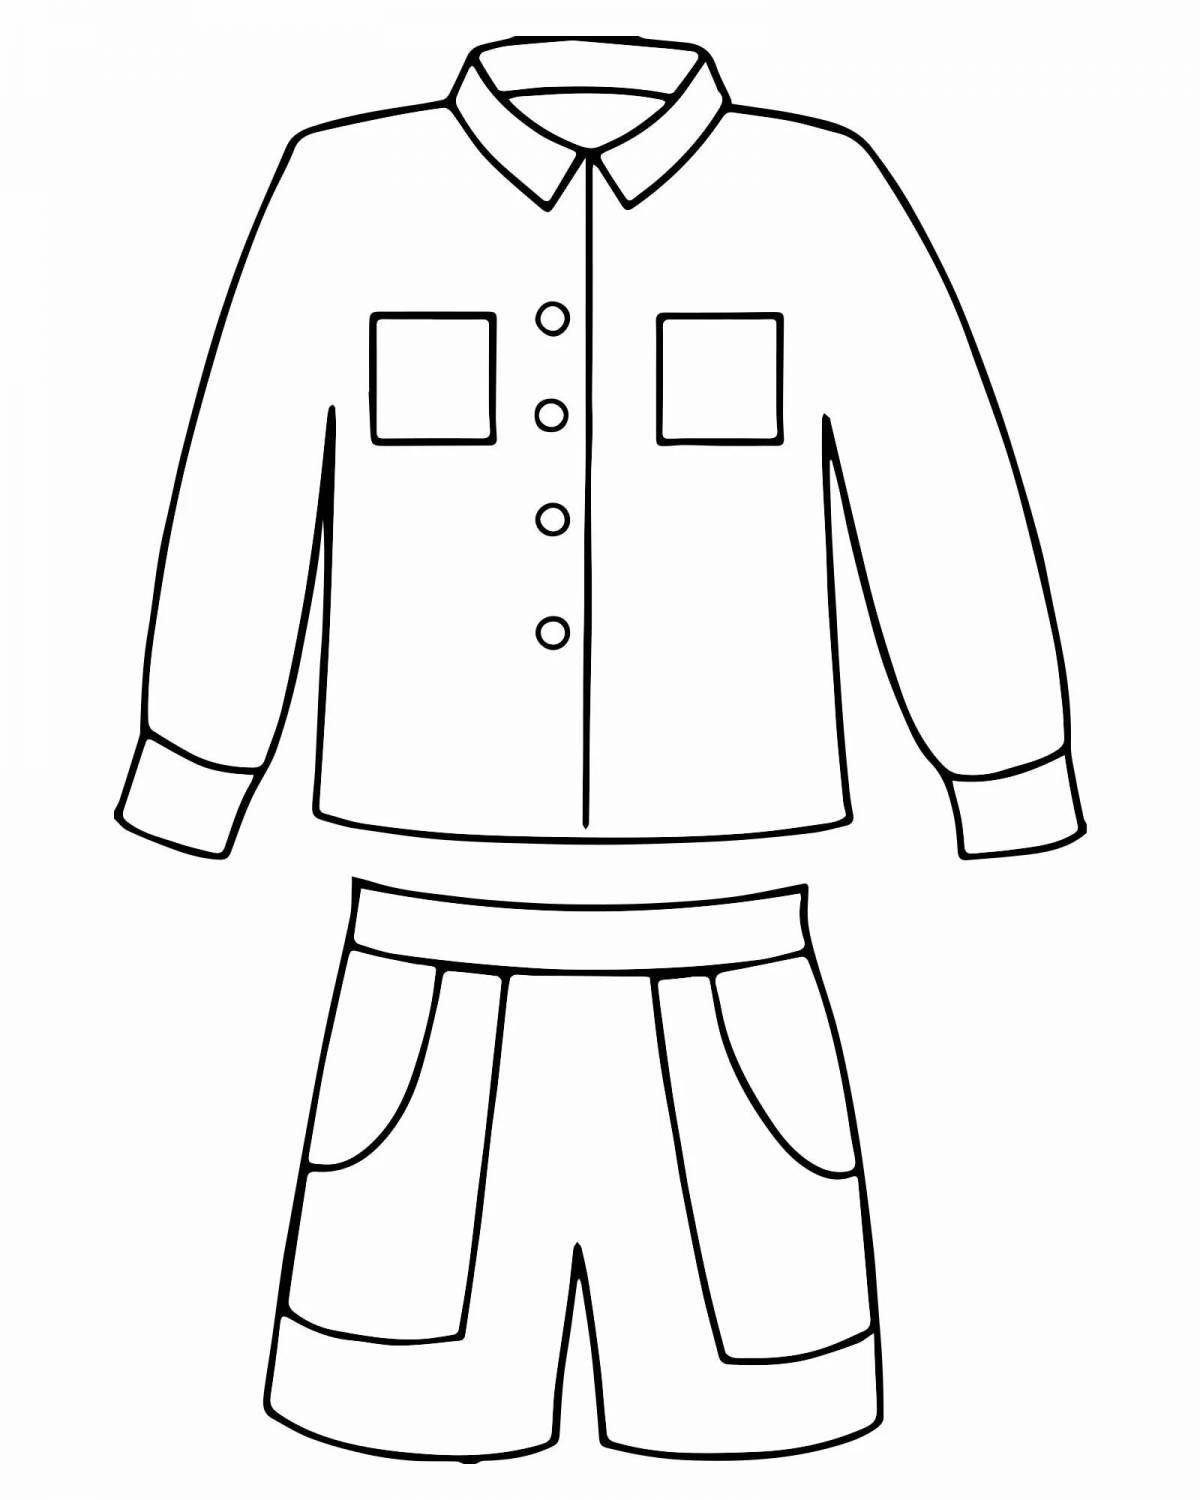 Cheerful school uniform for boys